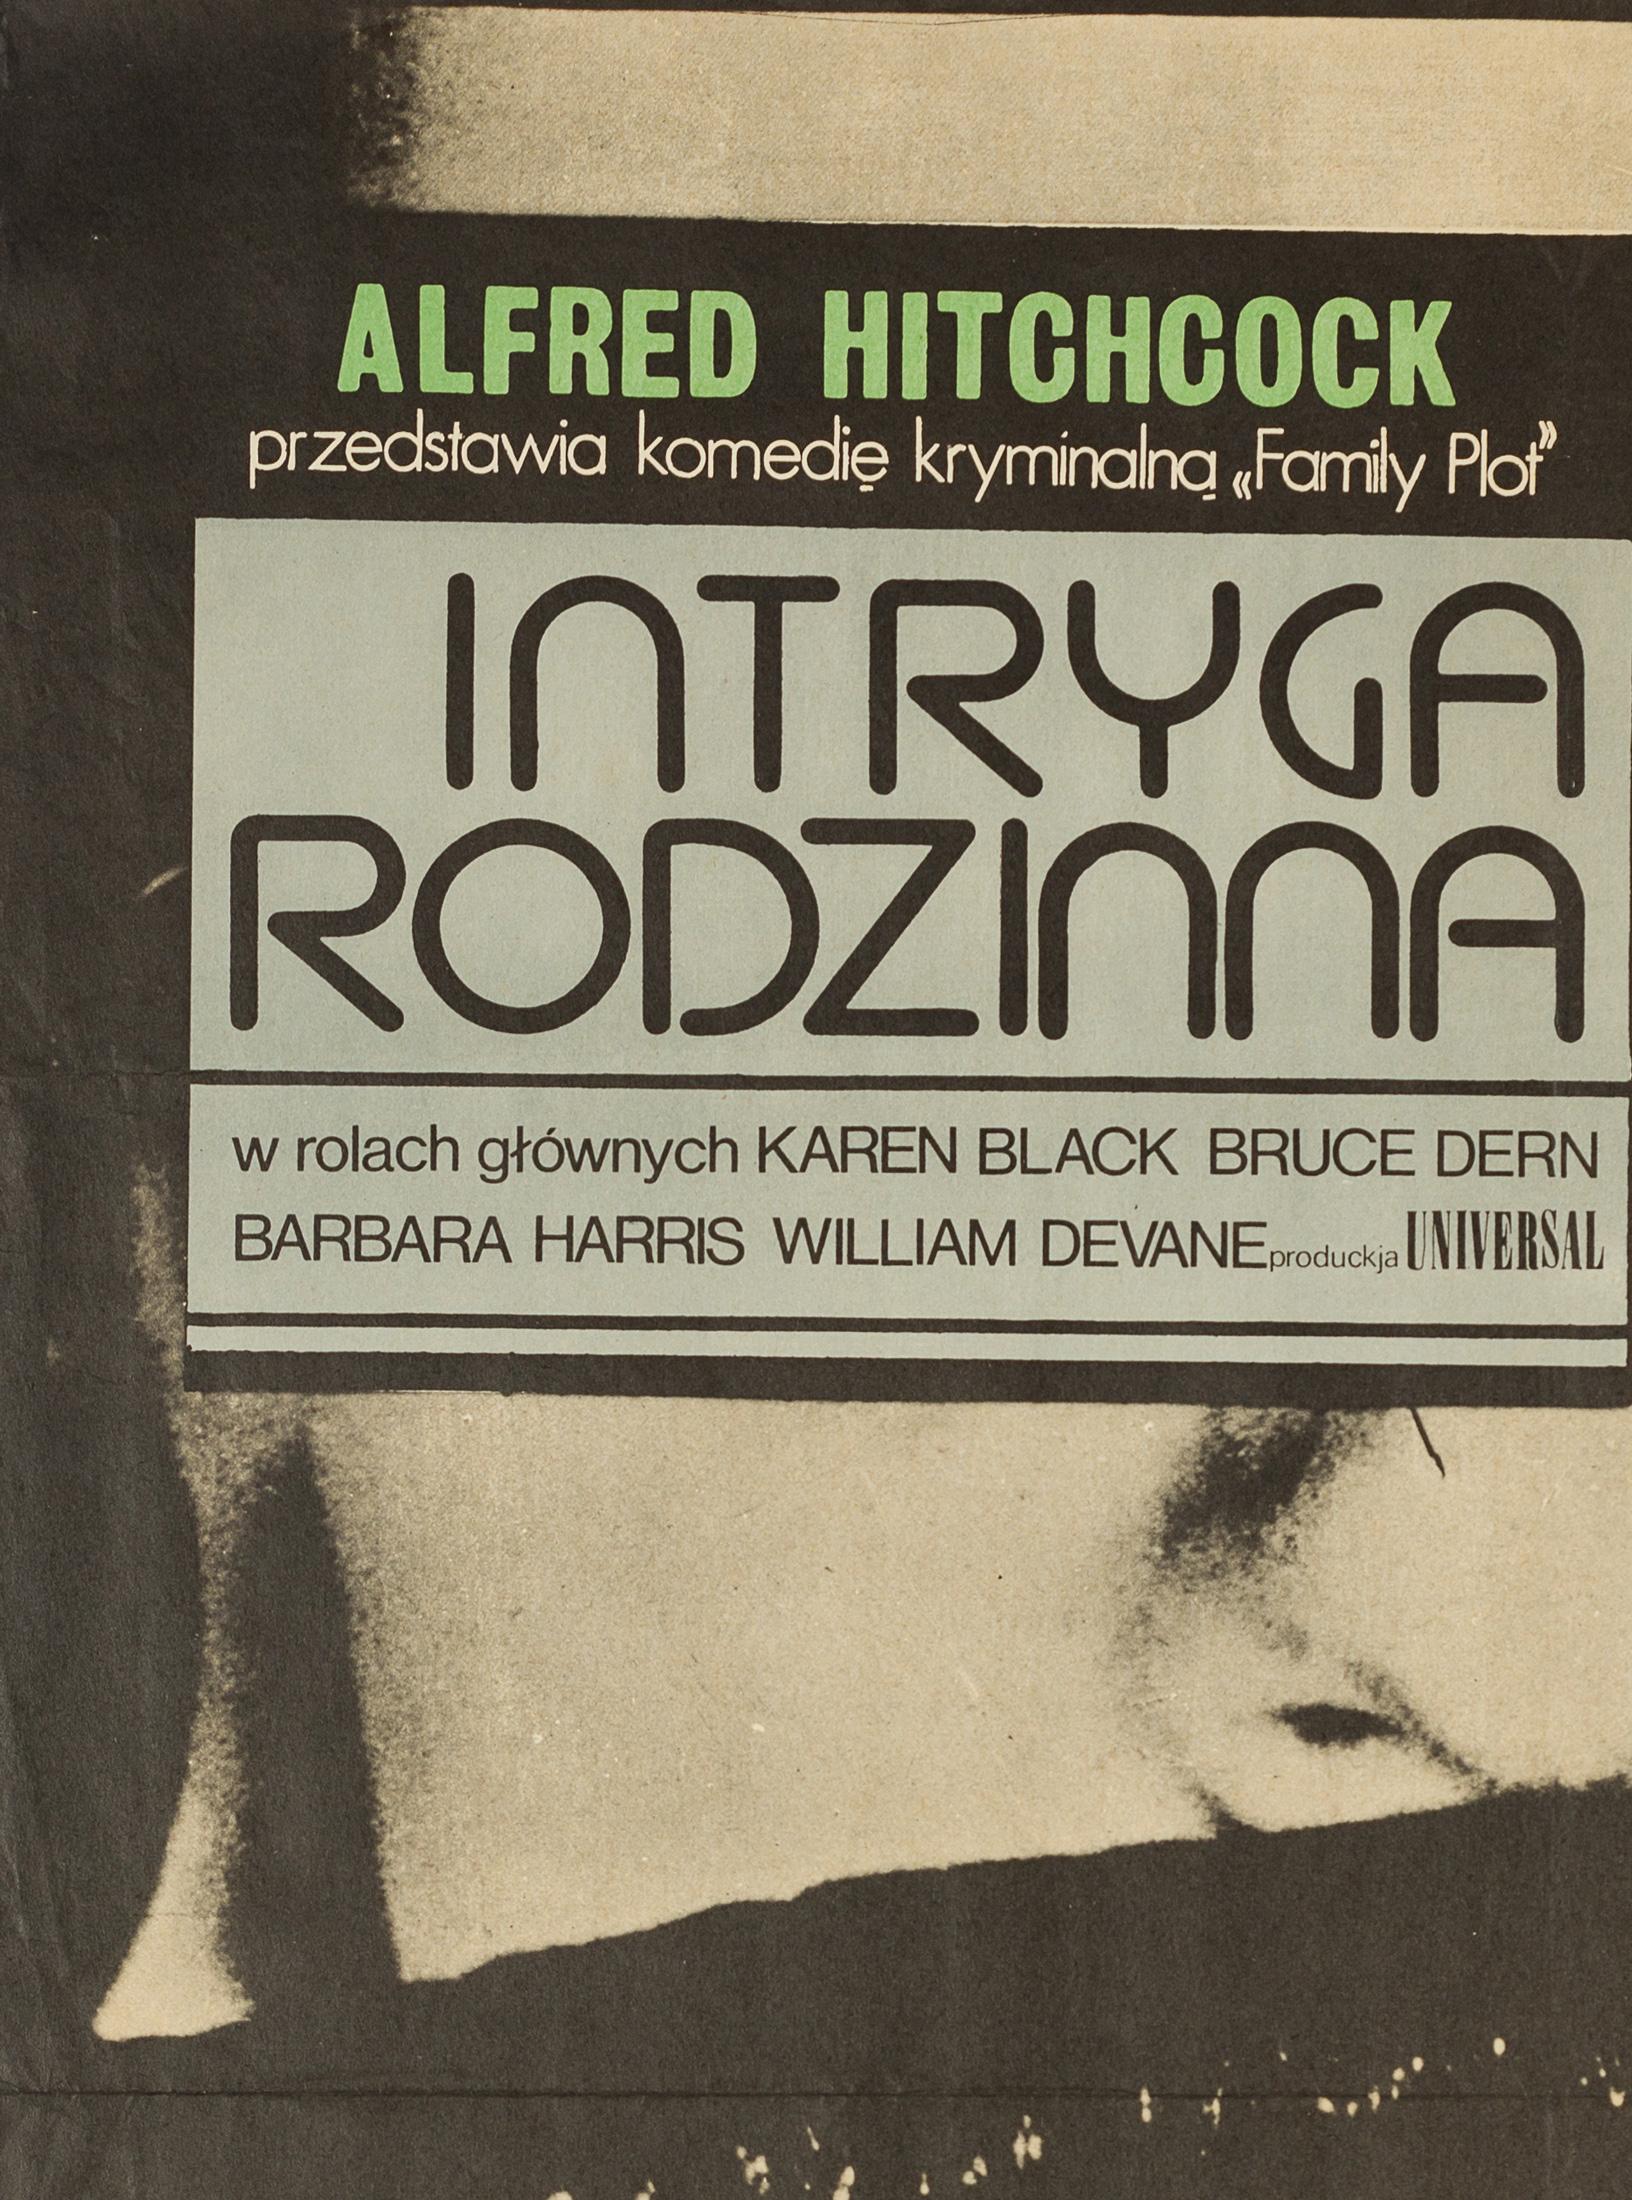 Das polnische Filmplakat von 1977 zu Hitchcocks letztem Film, Family Plot, ist ein sehr cooles Original-Artwork. Aus dem ersten Jahr der Veröffentlichung des Films in Polen.

Ursprünglich gefaltet, aber lange Zeit flach gelagert und wird nun